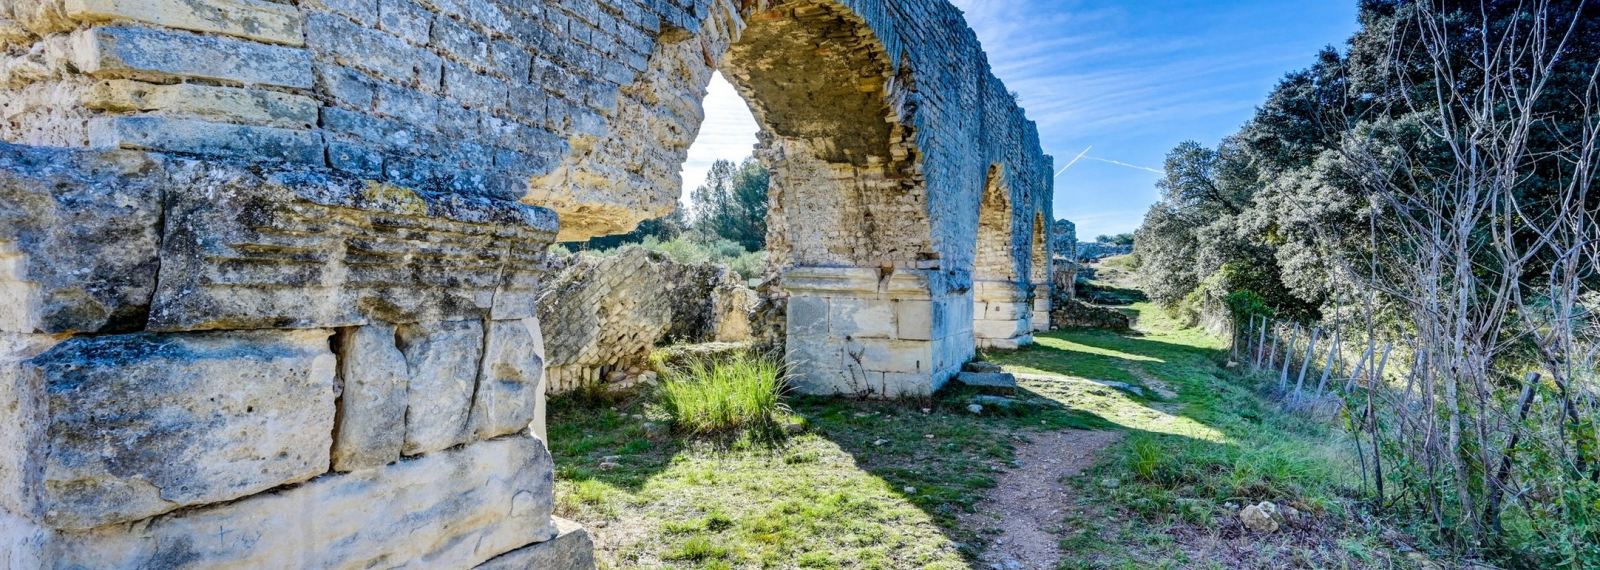 Römische Aquädukte von Barbegal